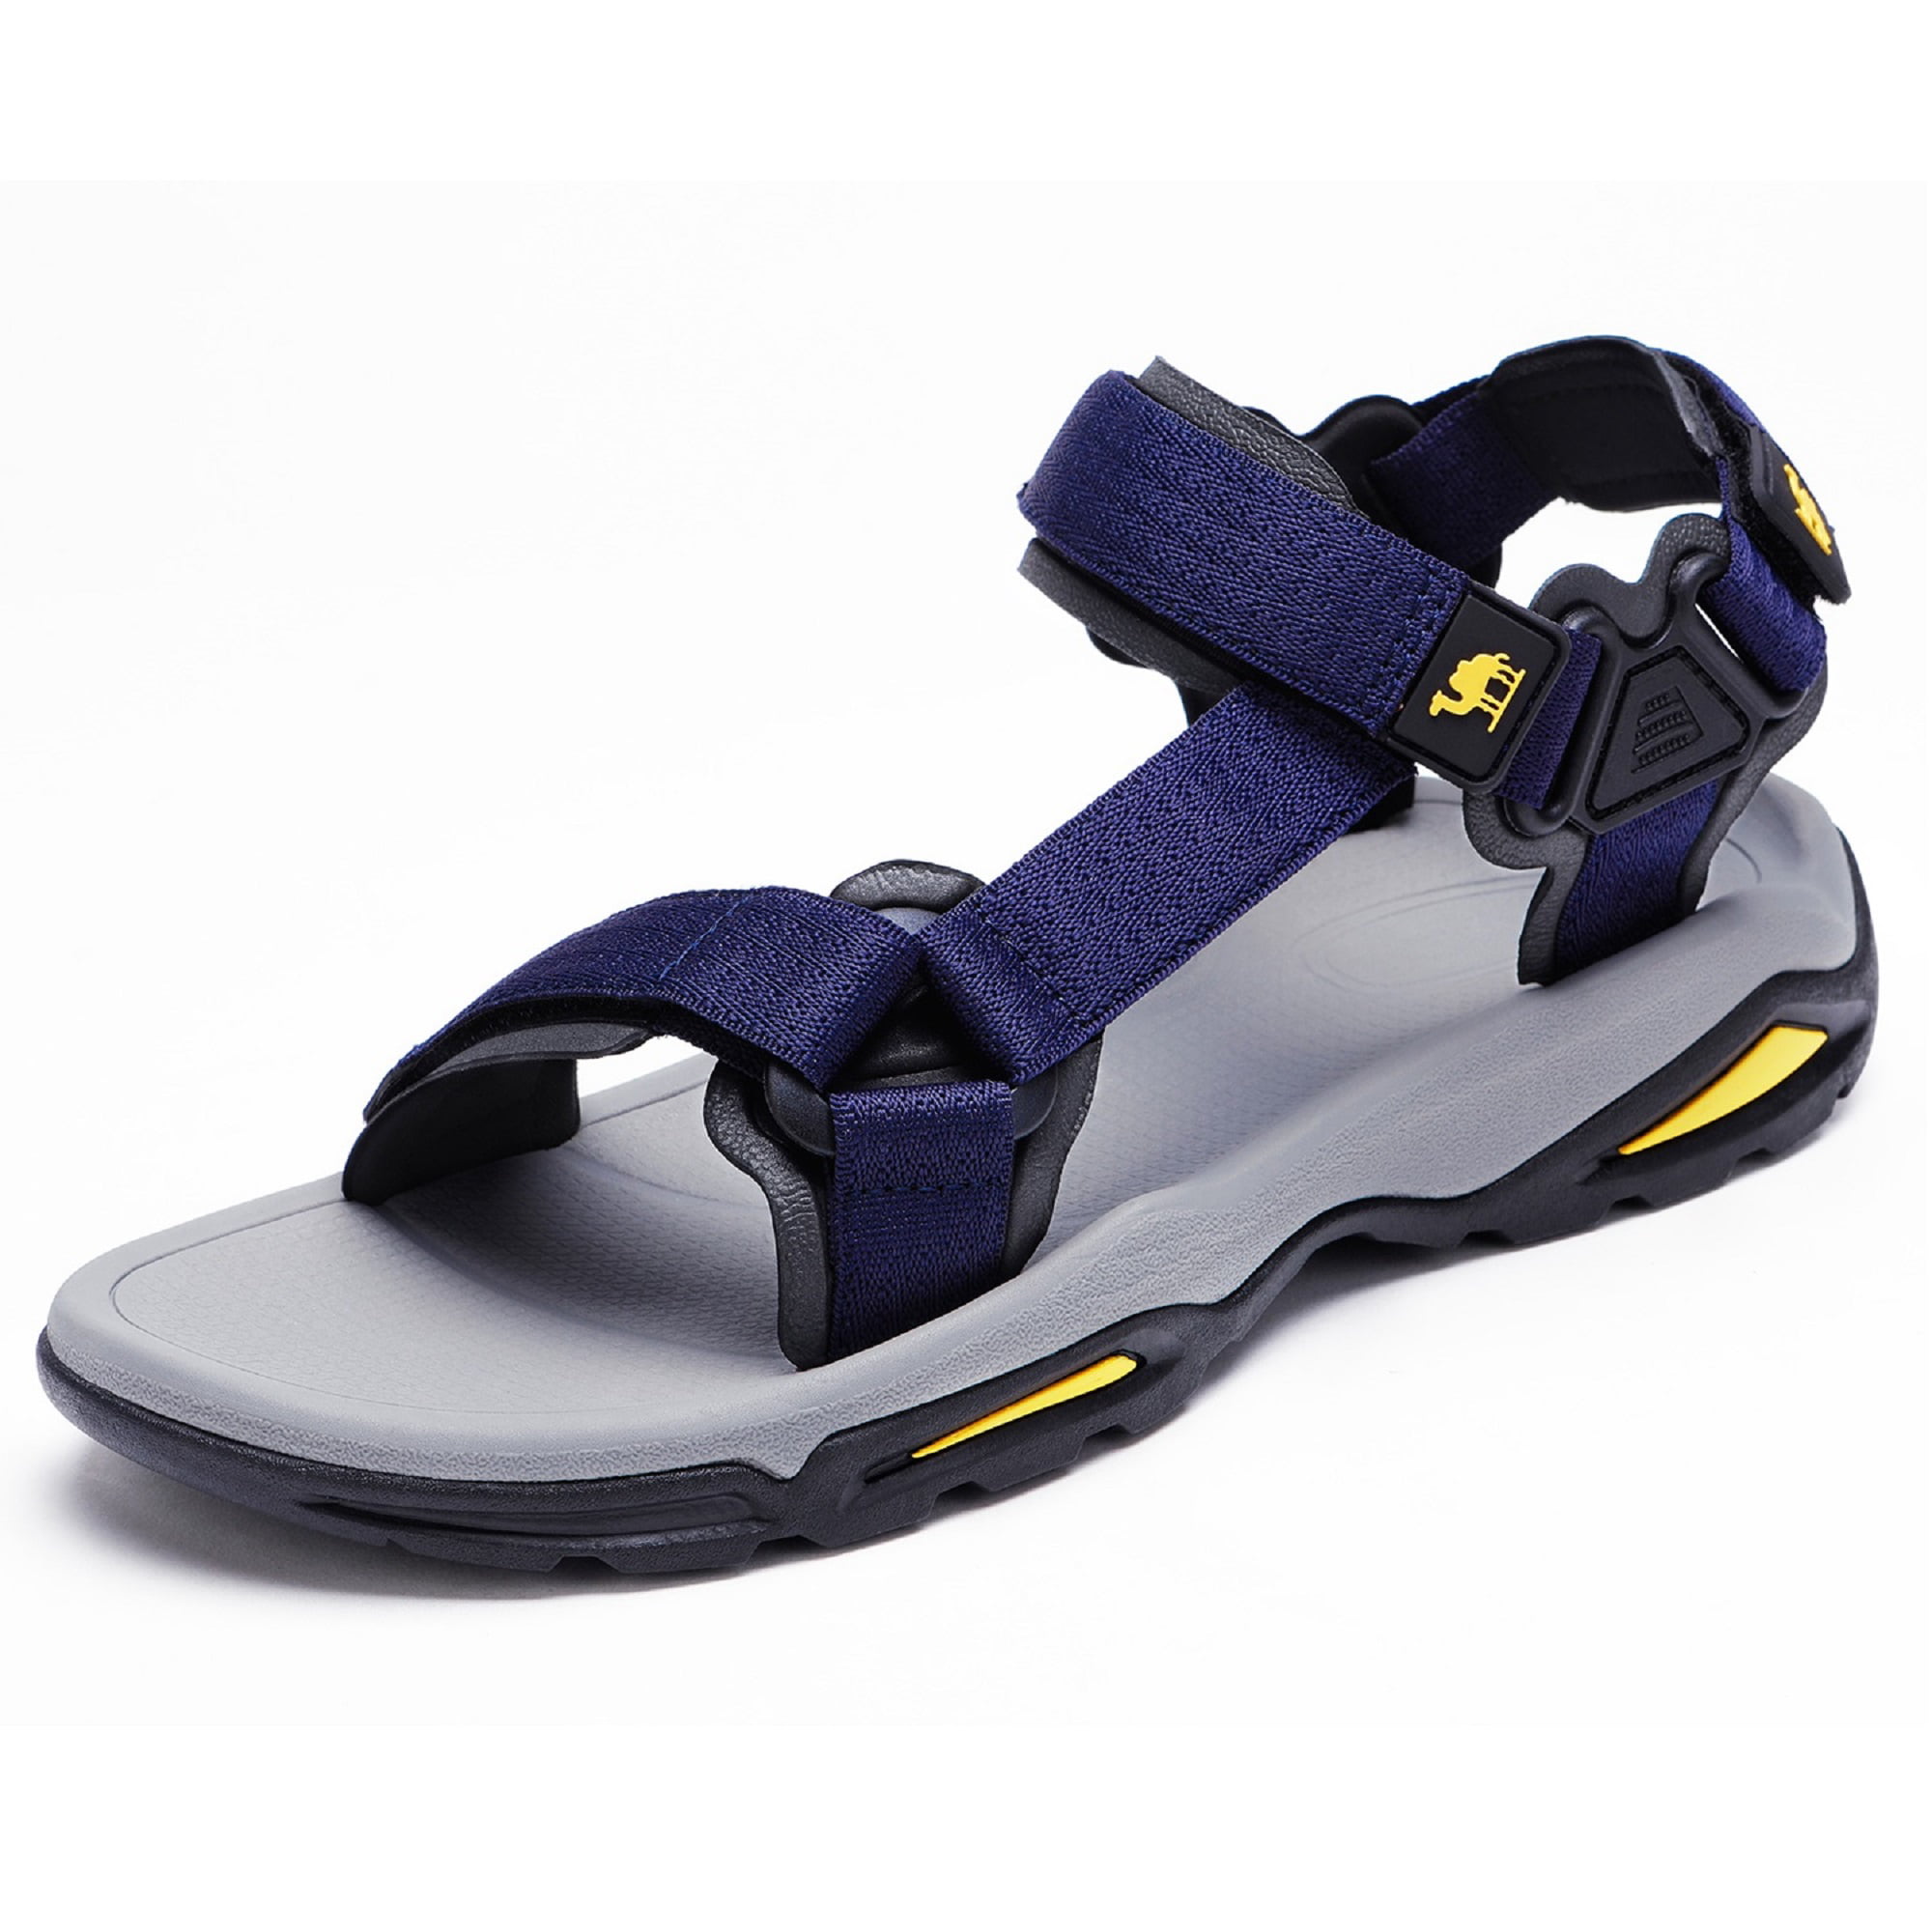 CAMEL - CAMEL Sport Sandals for Men Strap Athletic Shoes Waterproof ...